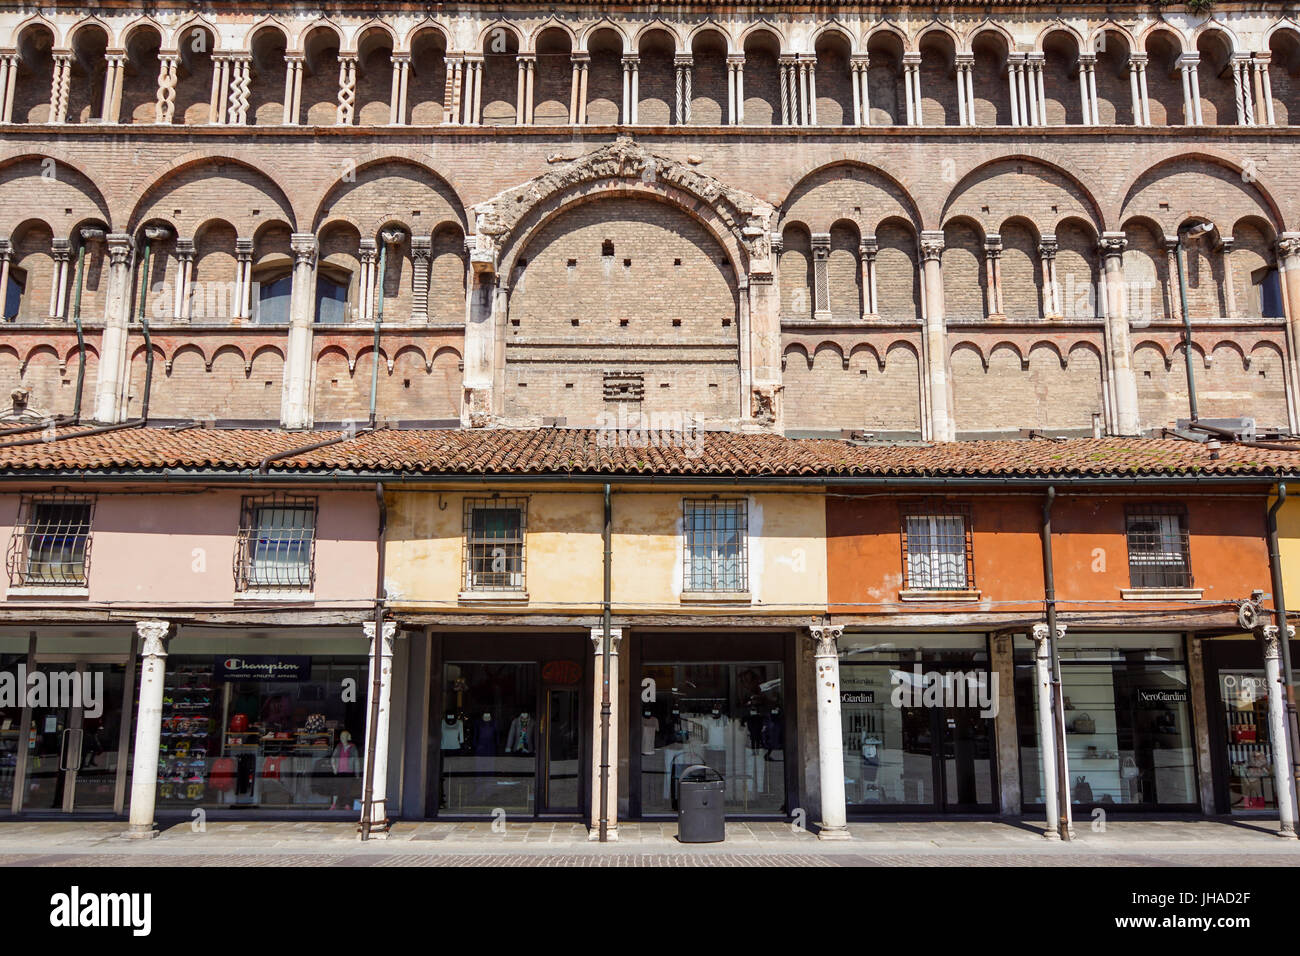 Ferrara, Italie - 11 mai, 2013. Voir de vieux bâtiment avec des gens et des magasins, à proximité de la Cathédrale de Ferrare dans le centre de Ferrare, un gracieux et importante ville médiévale. Région Emilie-Romagne Banque D'Images